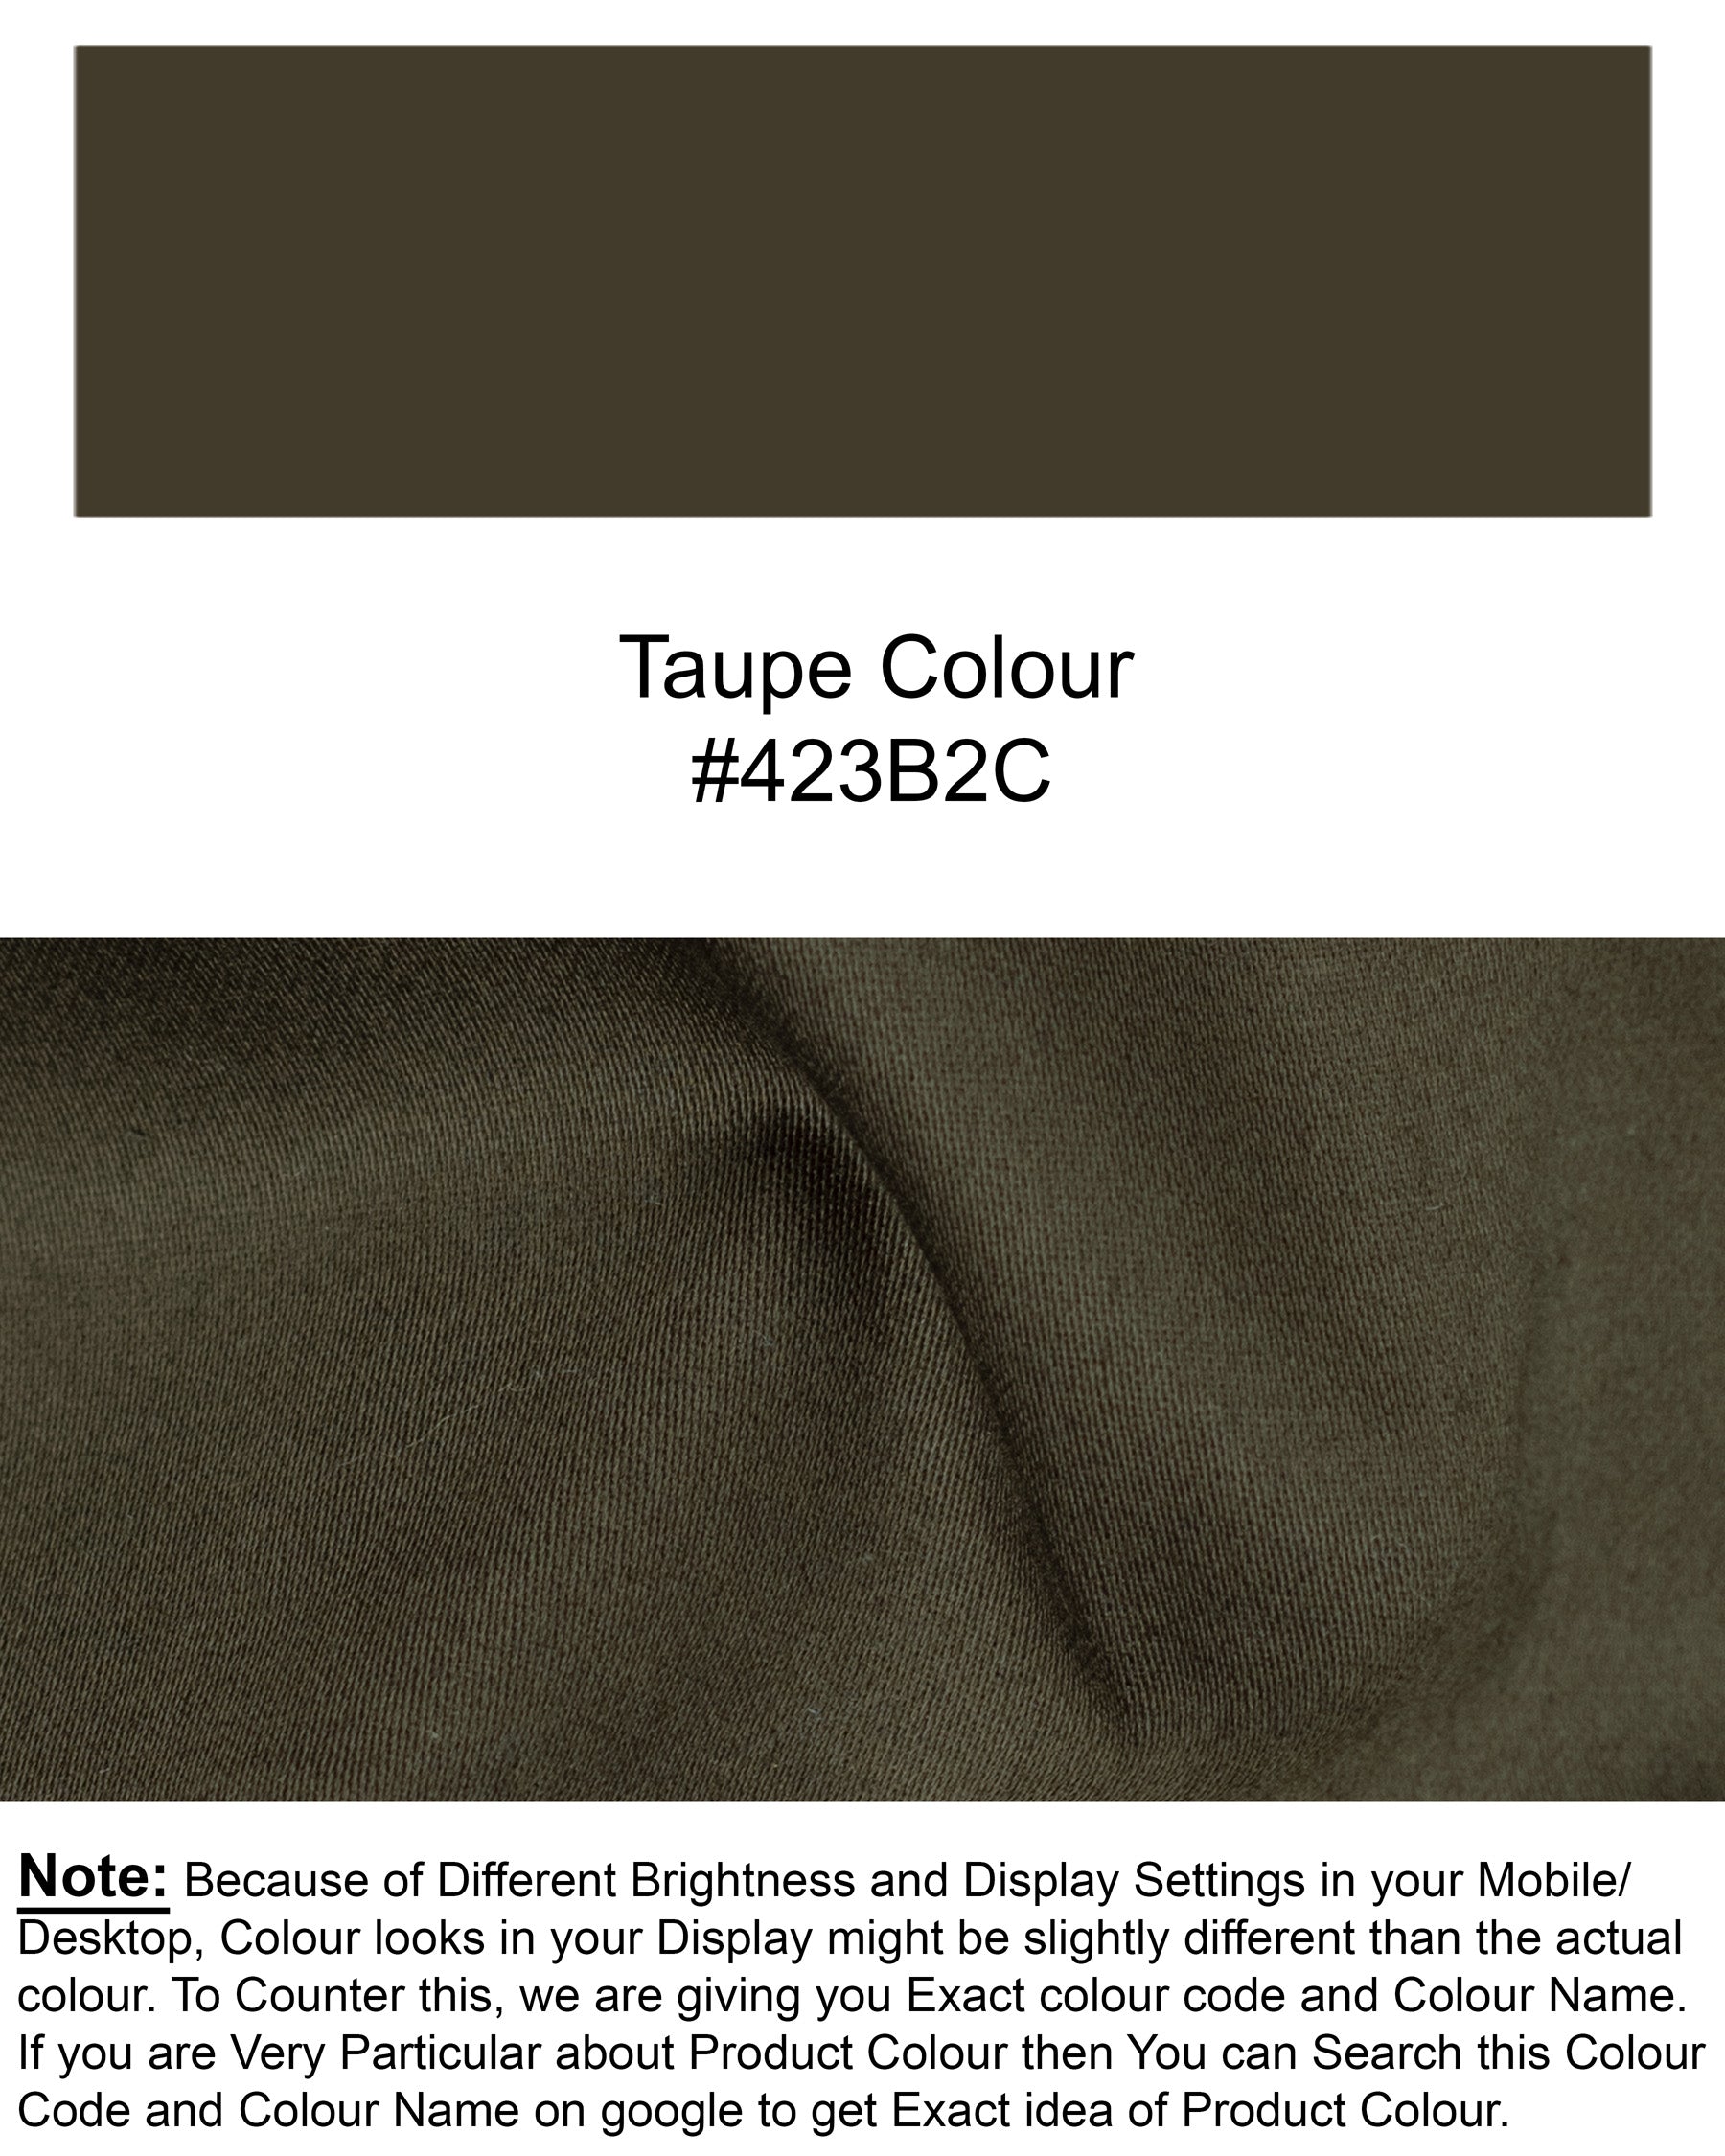 Taupe Brown Premium Cotton Suit ST1326-SBP-36, ST1326-SBP-38, ST1326-SBP-40, ST1326-SBP-42, ST1326-SBP-44, ST1326-SBP-46, ST1326-SBP-48, ST1326-SBP-50, ST1326-SBP-52, ST1326-SBP-54, ST1326-SBP-56, ST1326-SBP-58, ST1326-SBP-60